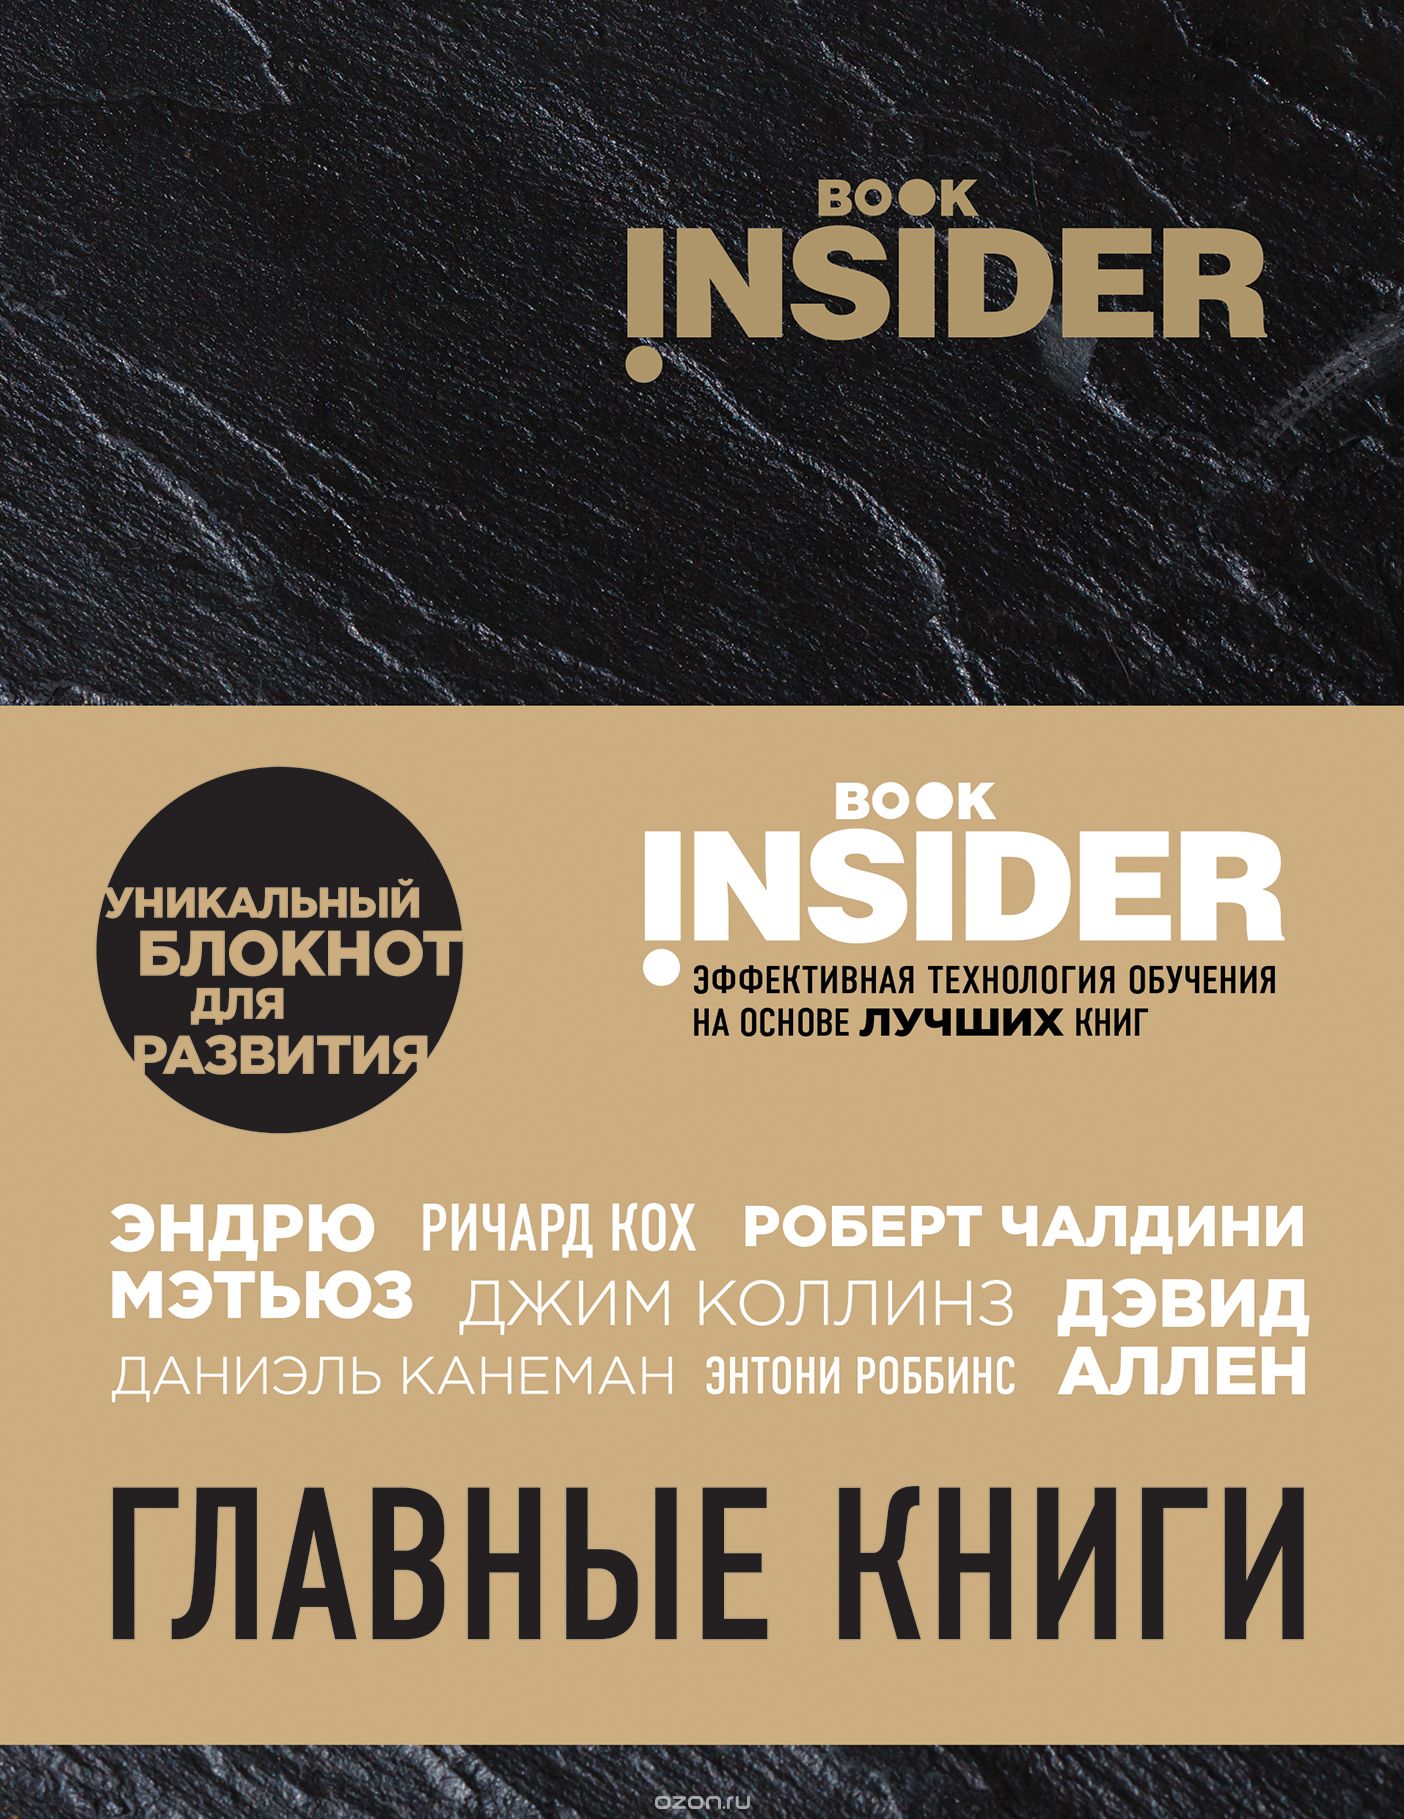 Book Insider. Главные книги, Ицхак Пинтосевич, Григорий Аветов